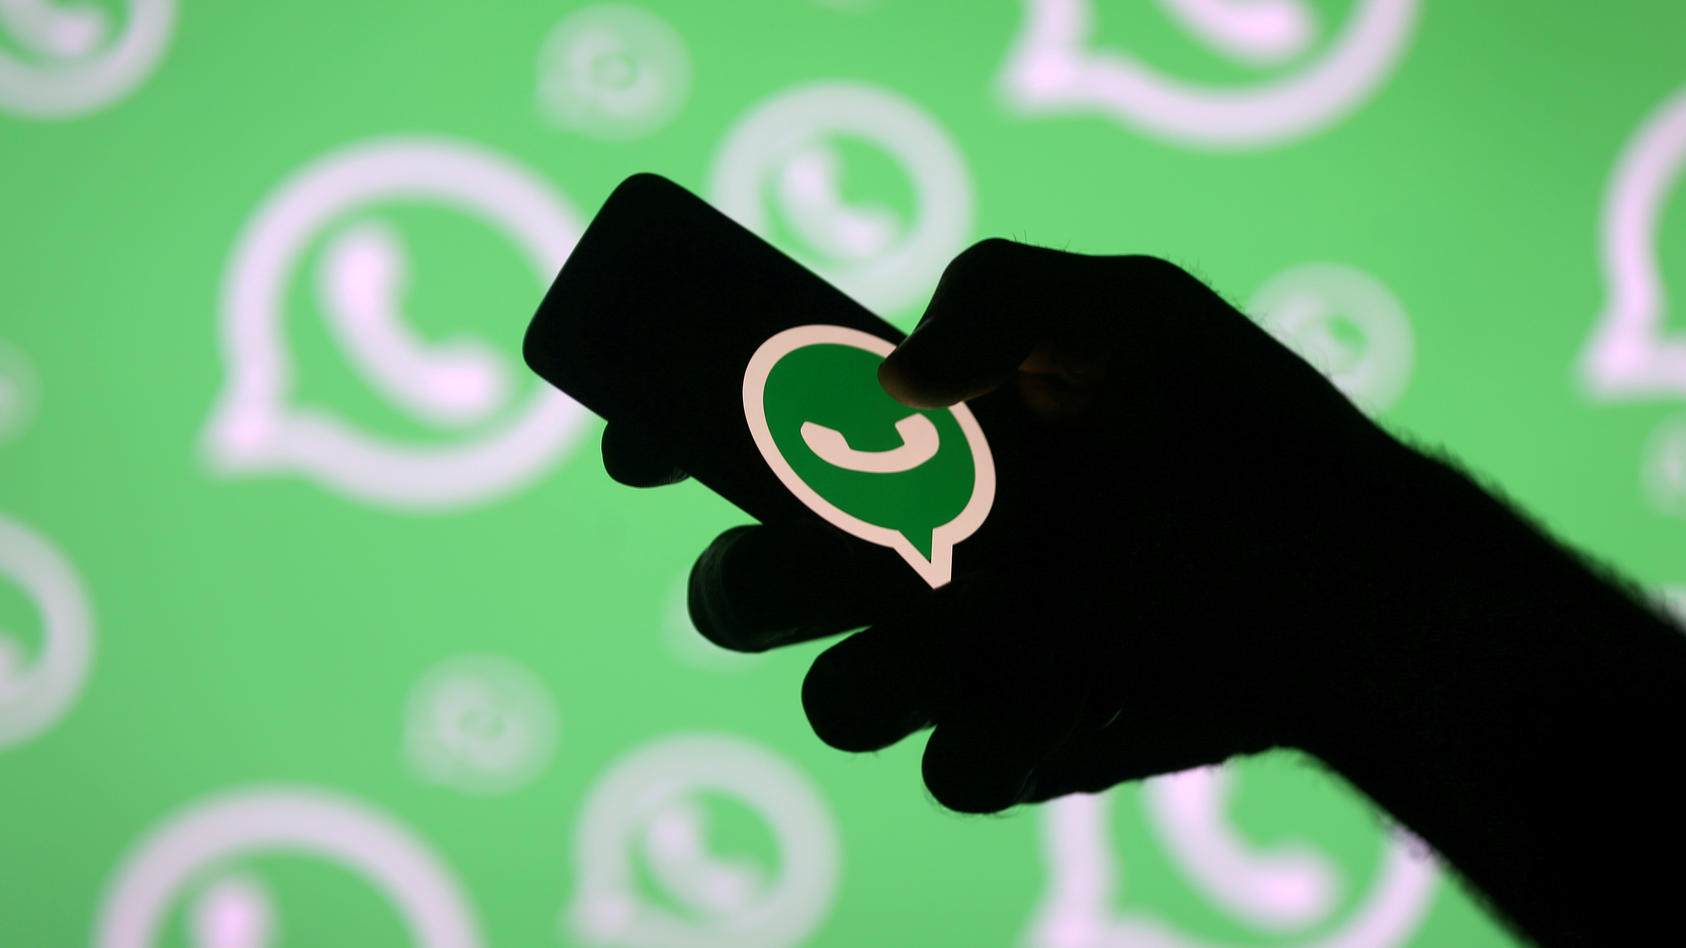 Τεχνολογία: Το WhatsApp θα απενεργοποιεί τα μηνύματα για όσους χρήστες απορρίπτουν τους νέους όρους